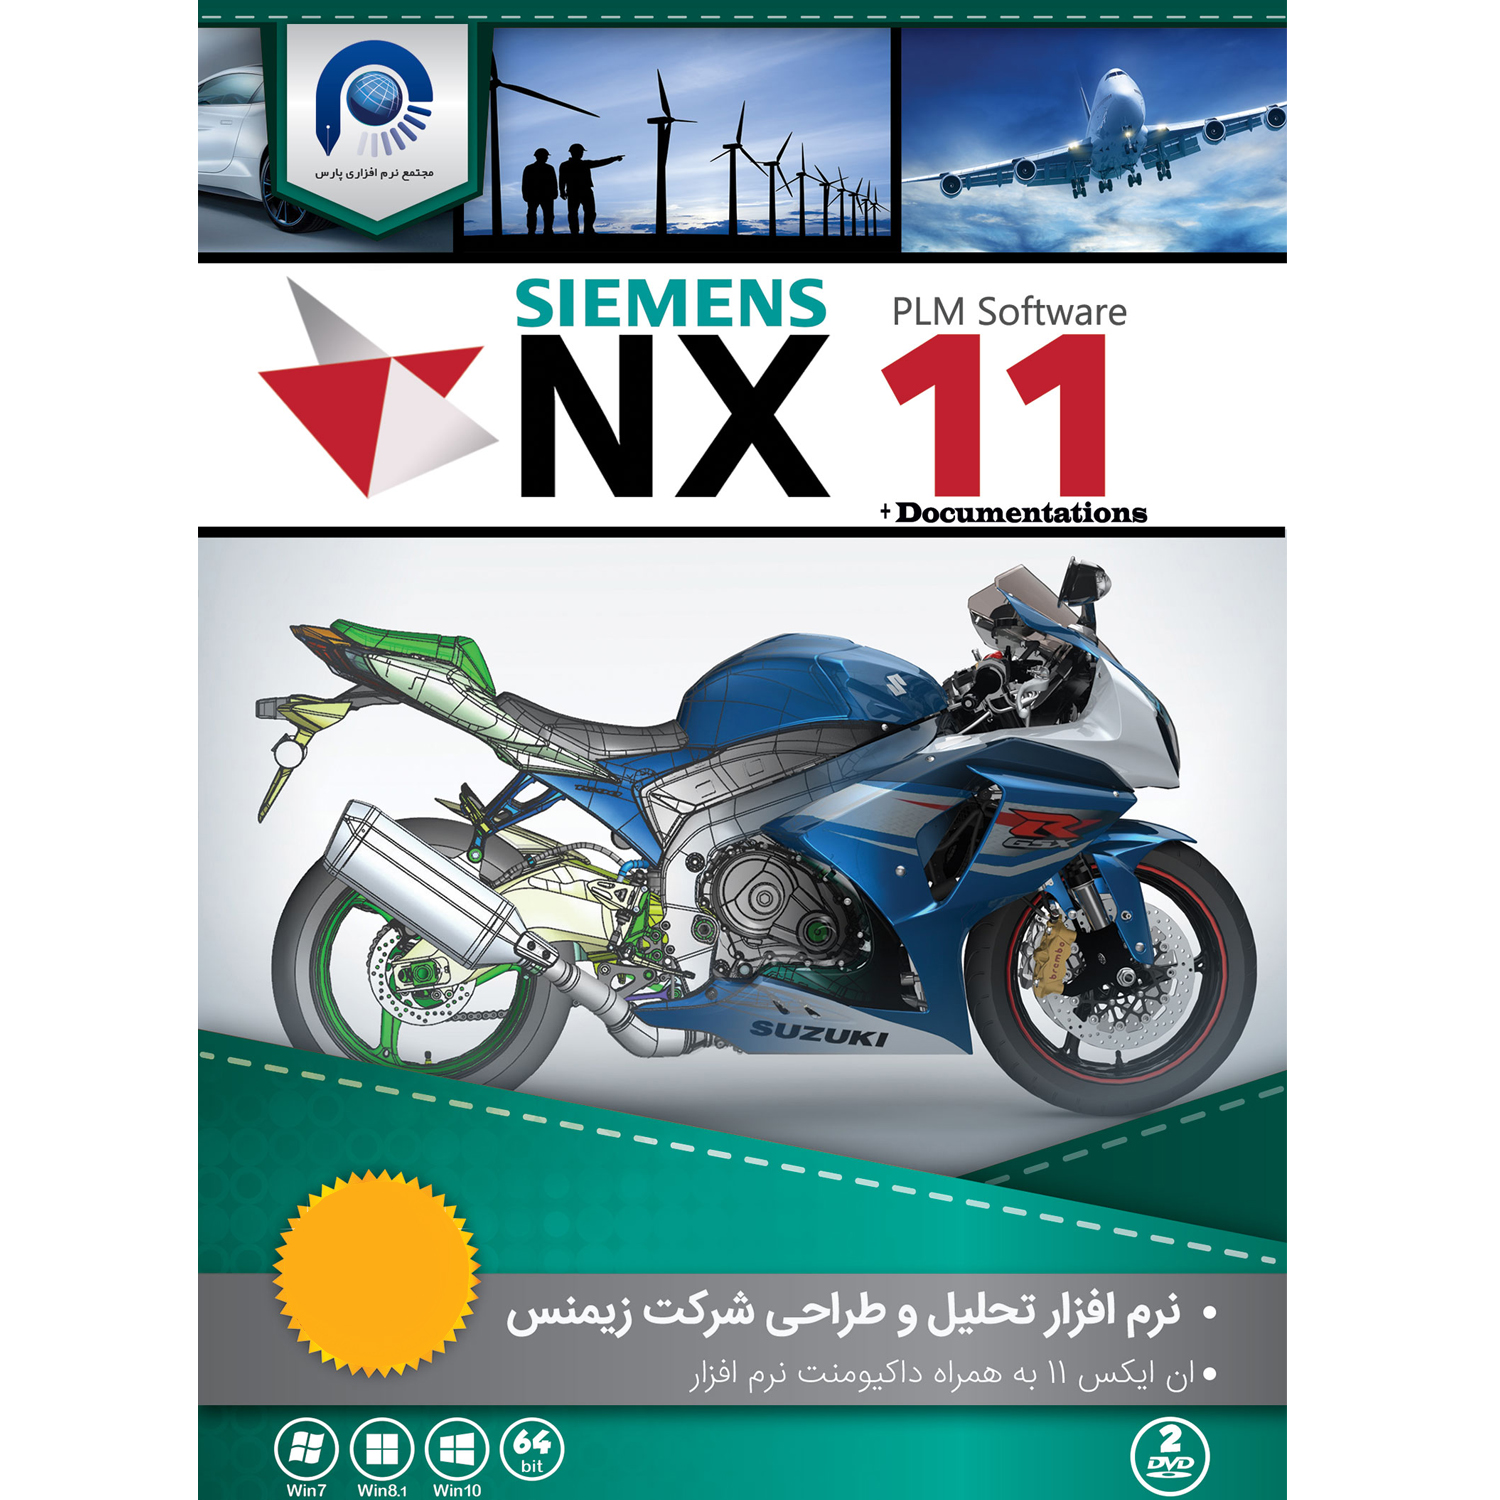 نرم افزار  SIEMENS NX11 نشر مجتمع نرم افزاری پارس